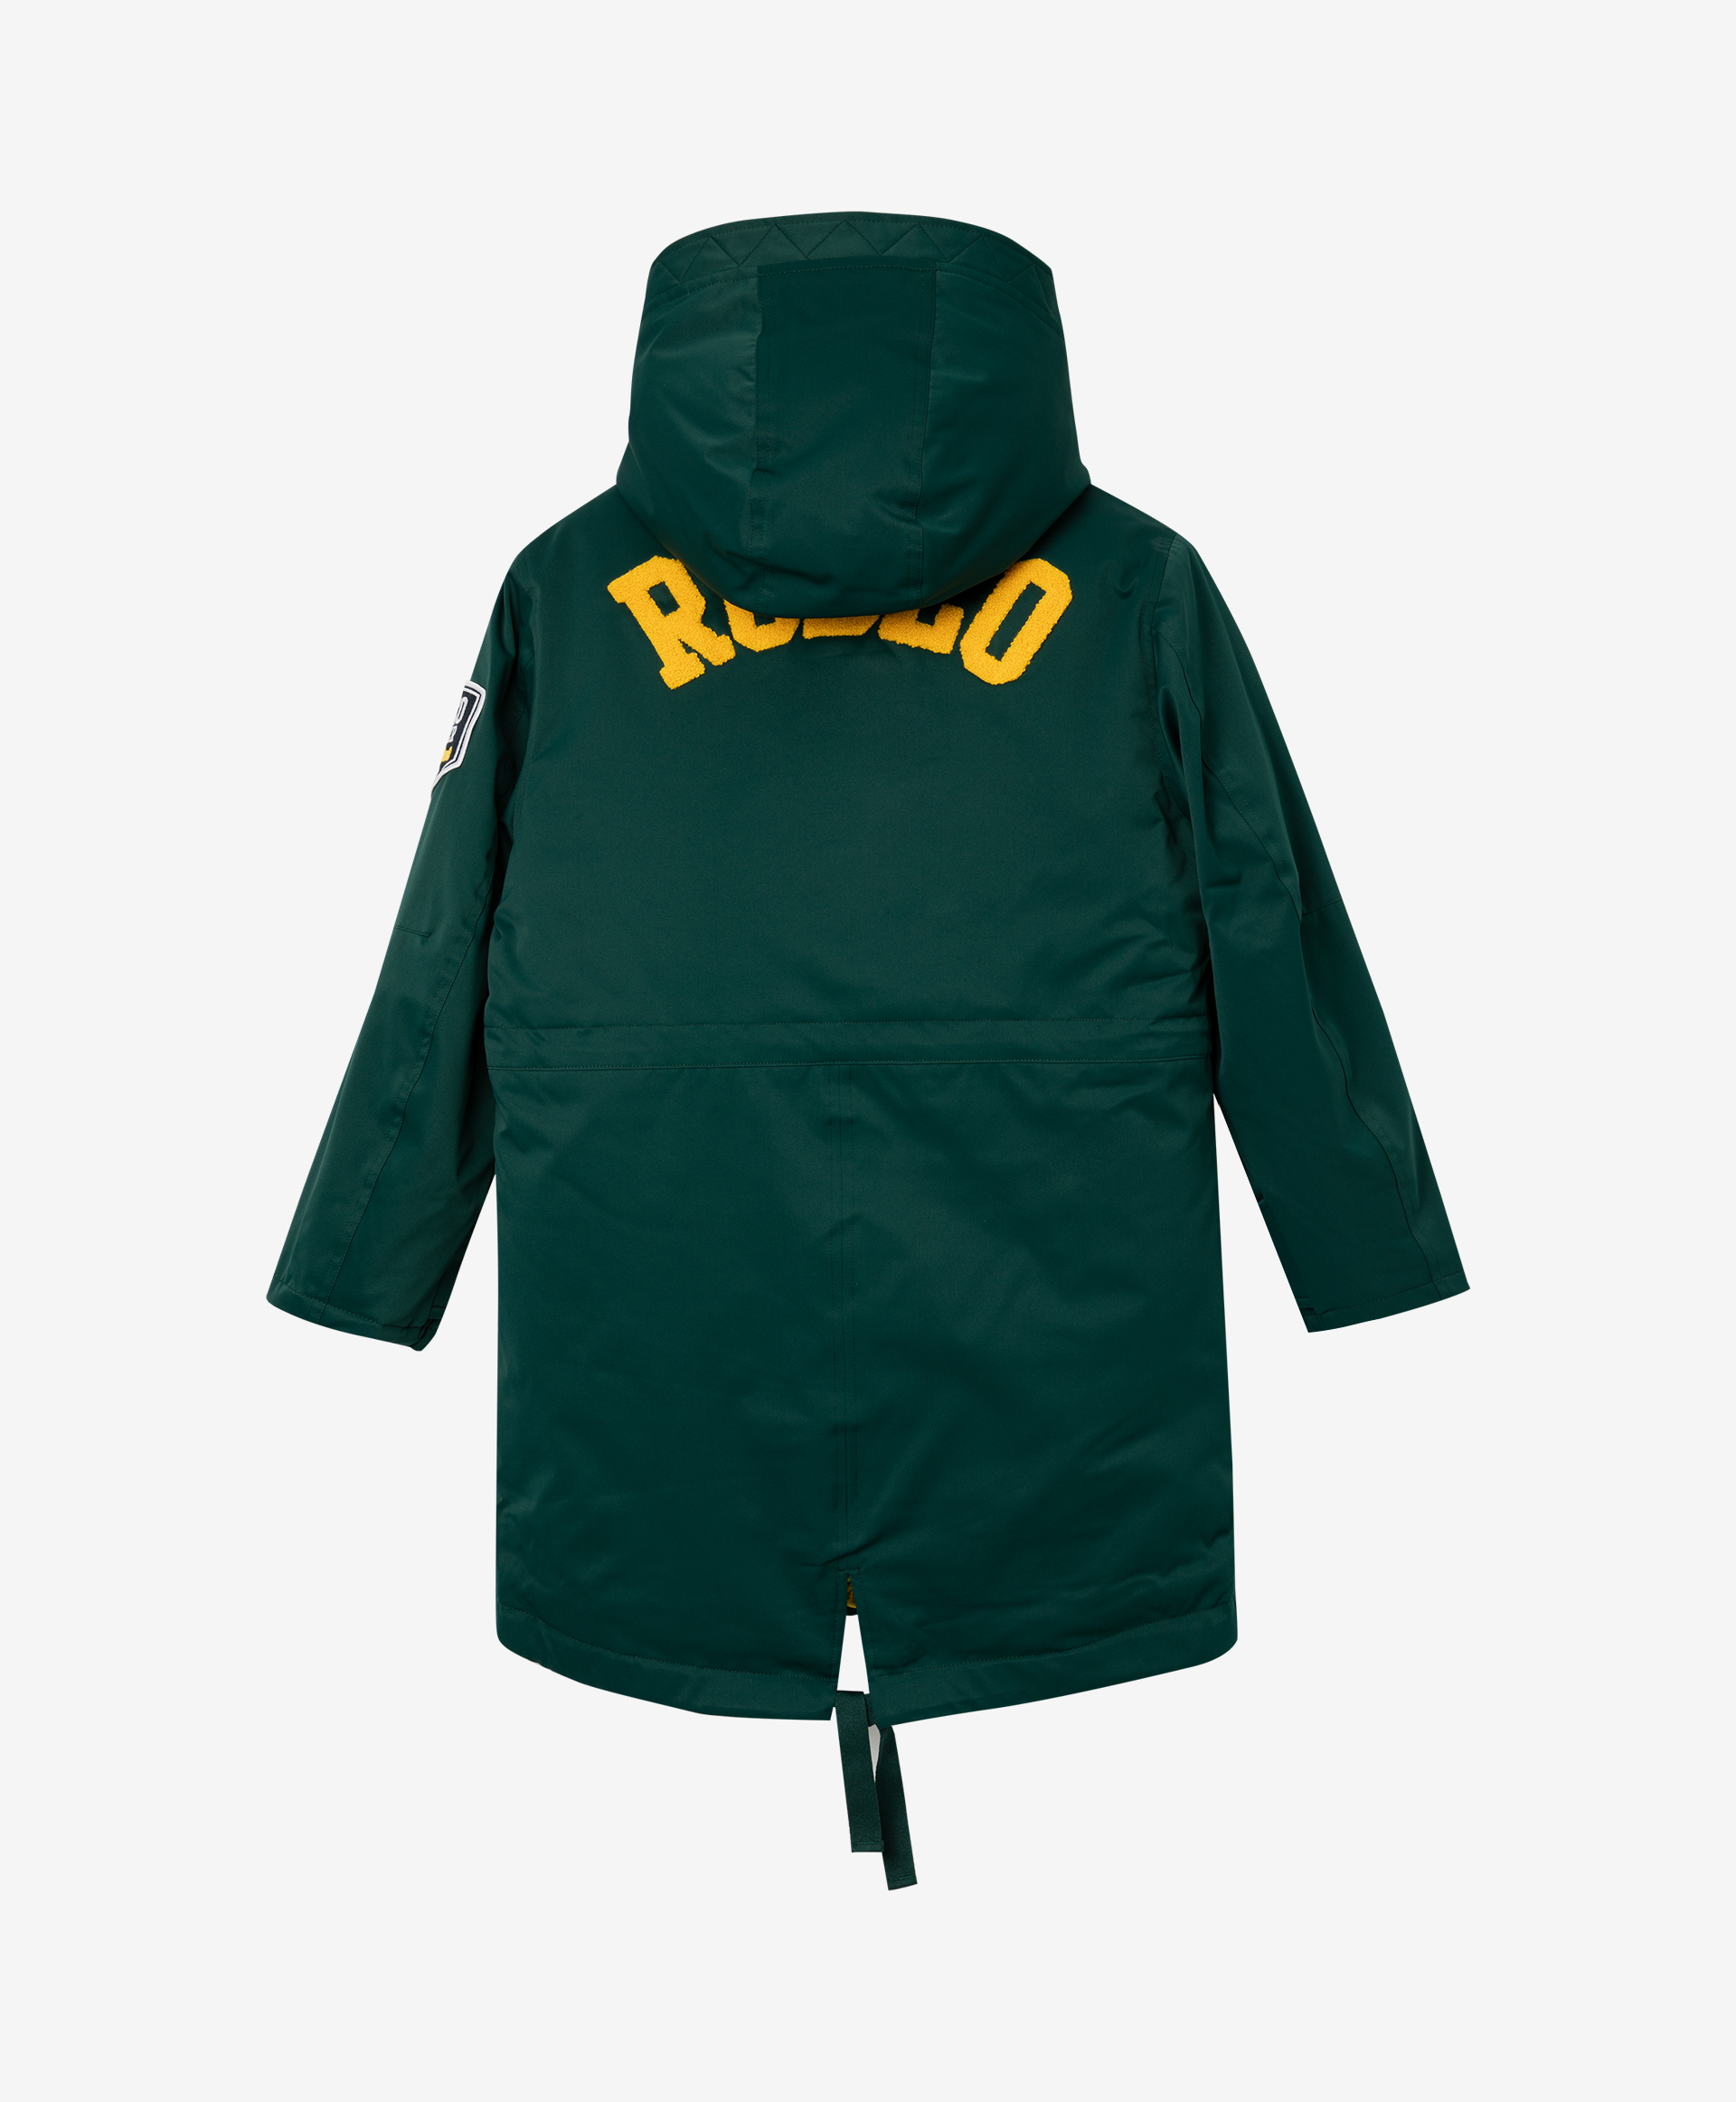 Комплект: куртка и жилет Gulliver 22011BJC4505, размер 164, цвет зеленый - фото 4